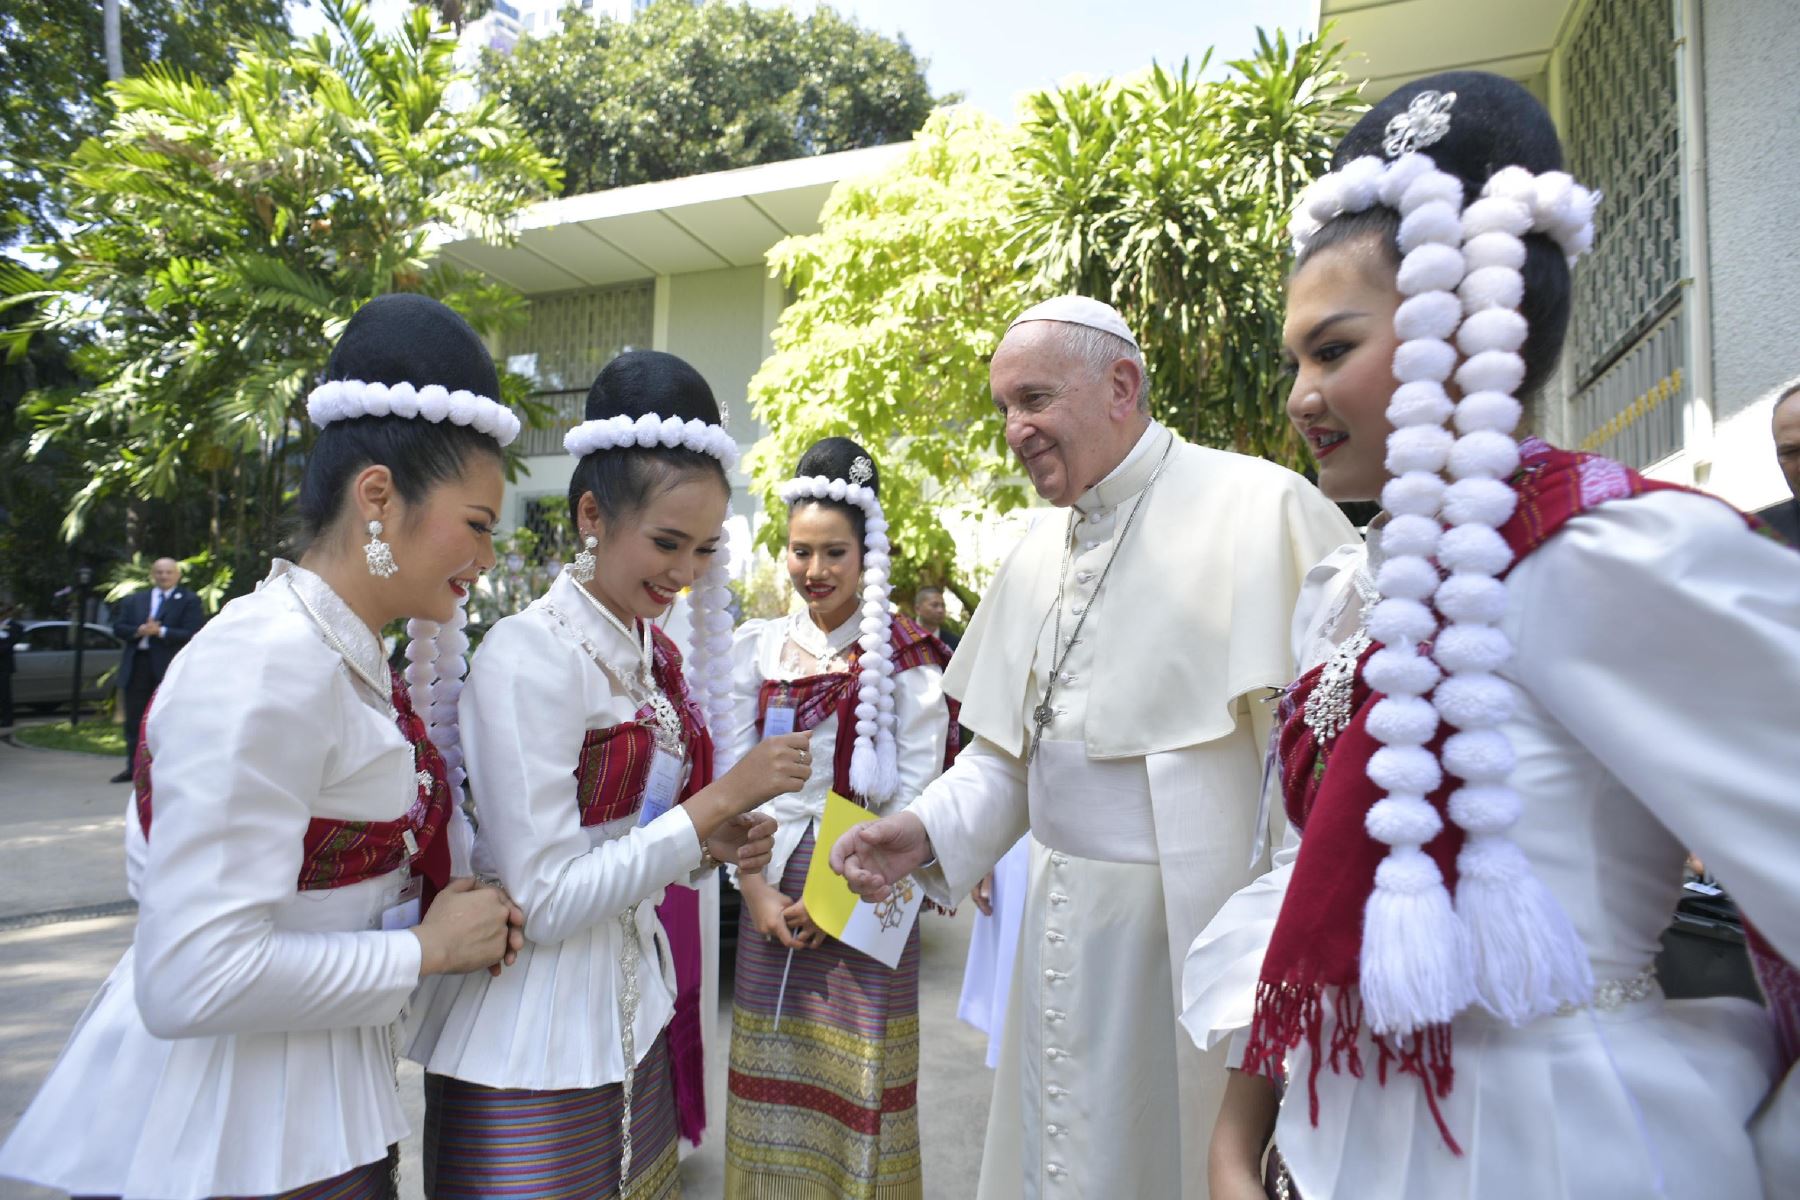 El Papa Francisco saluda a las personas durante su llegada a la Nunciatura Apostólica de la Santa Sede en Bangkok. Foto: AFP